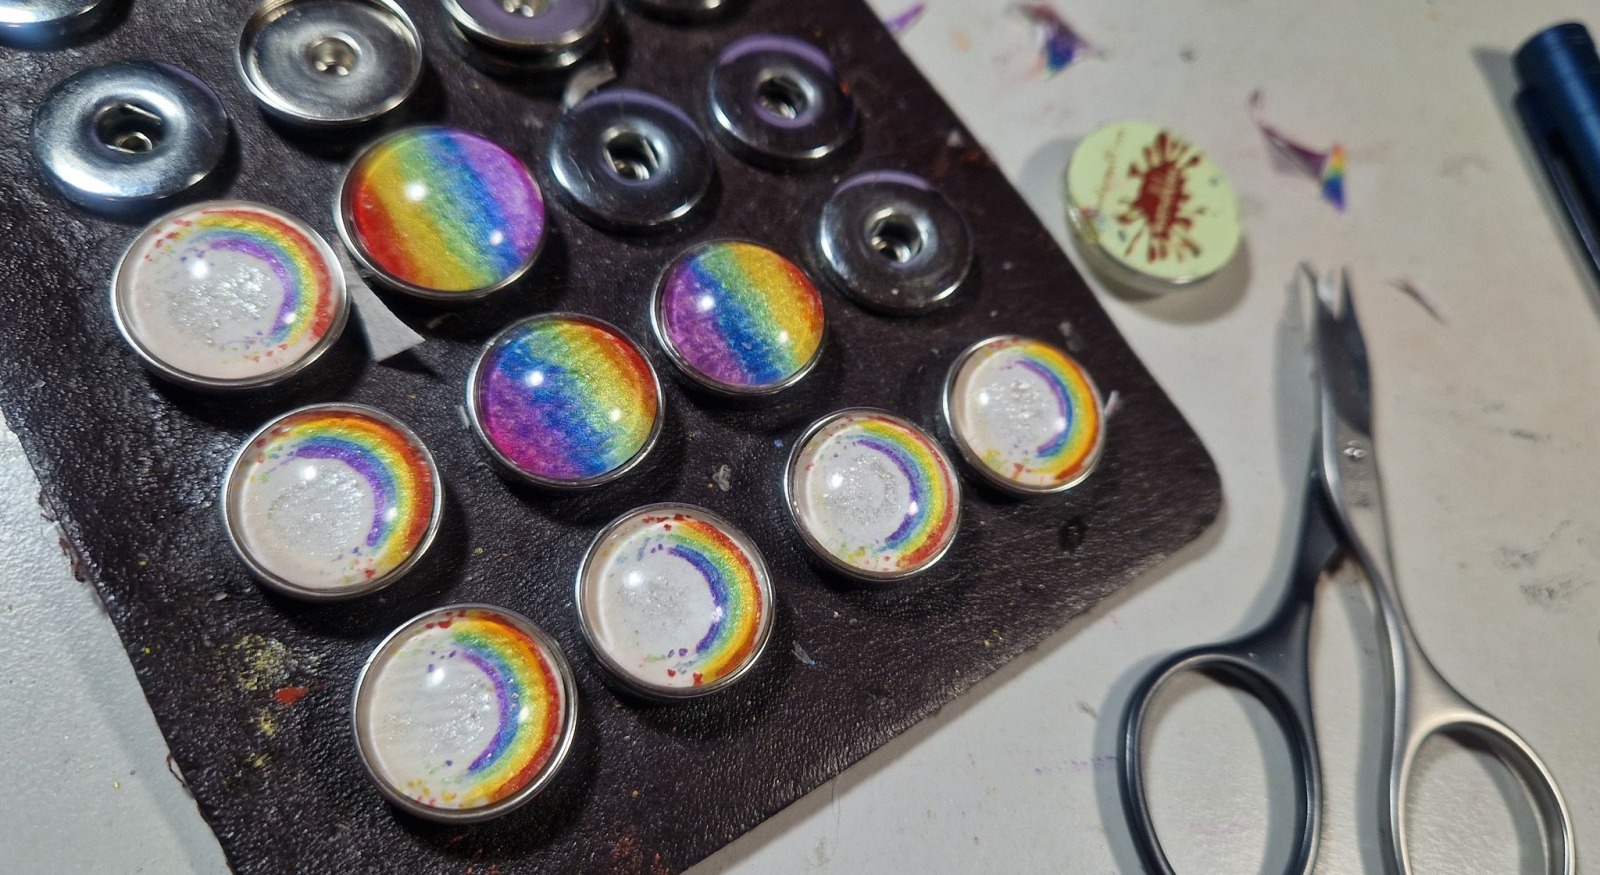 Regenbogenmotive, mit Silikonarmband, Farbe wählbar oder als Halsschmuck Druckknopf-Wechselsystem